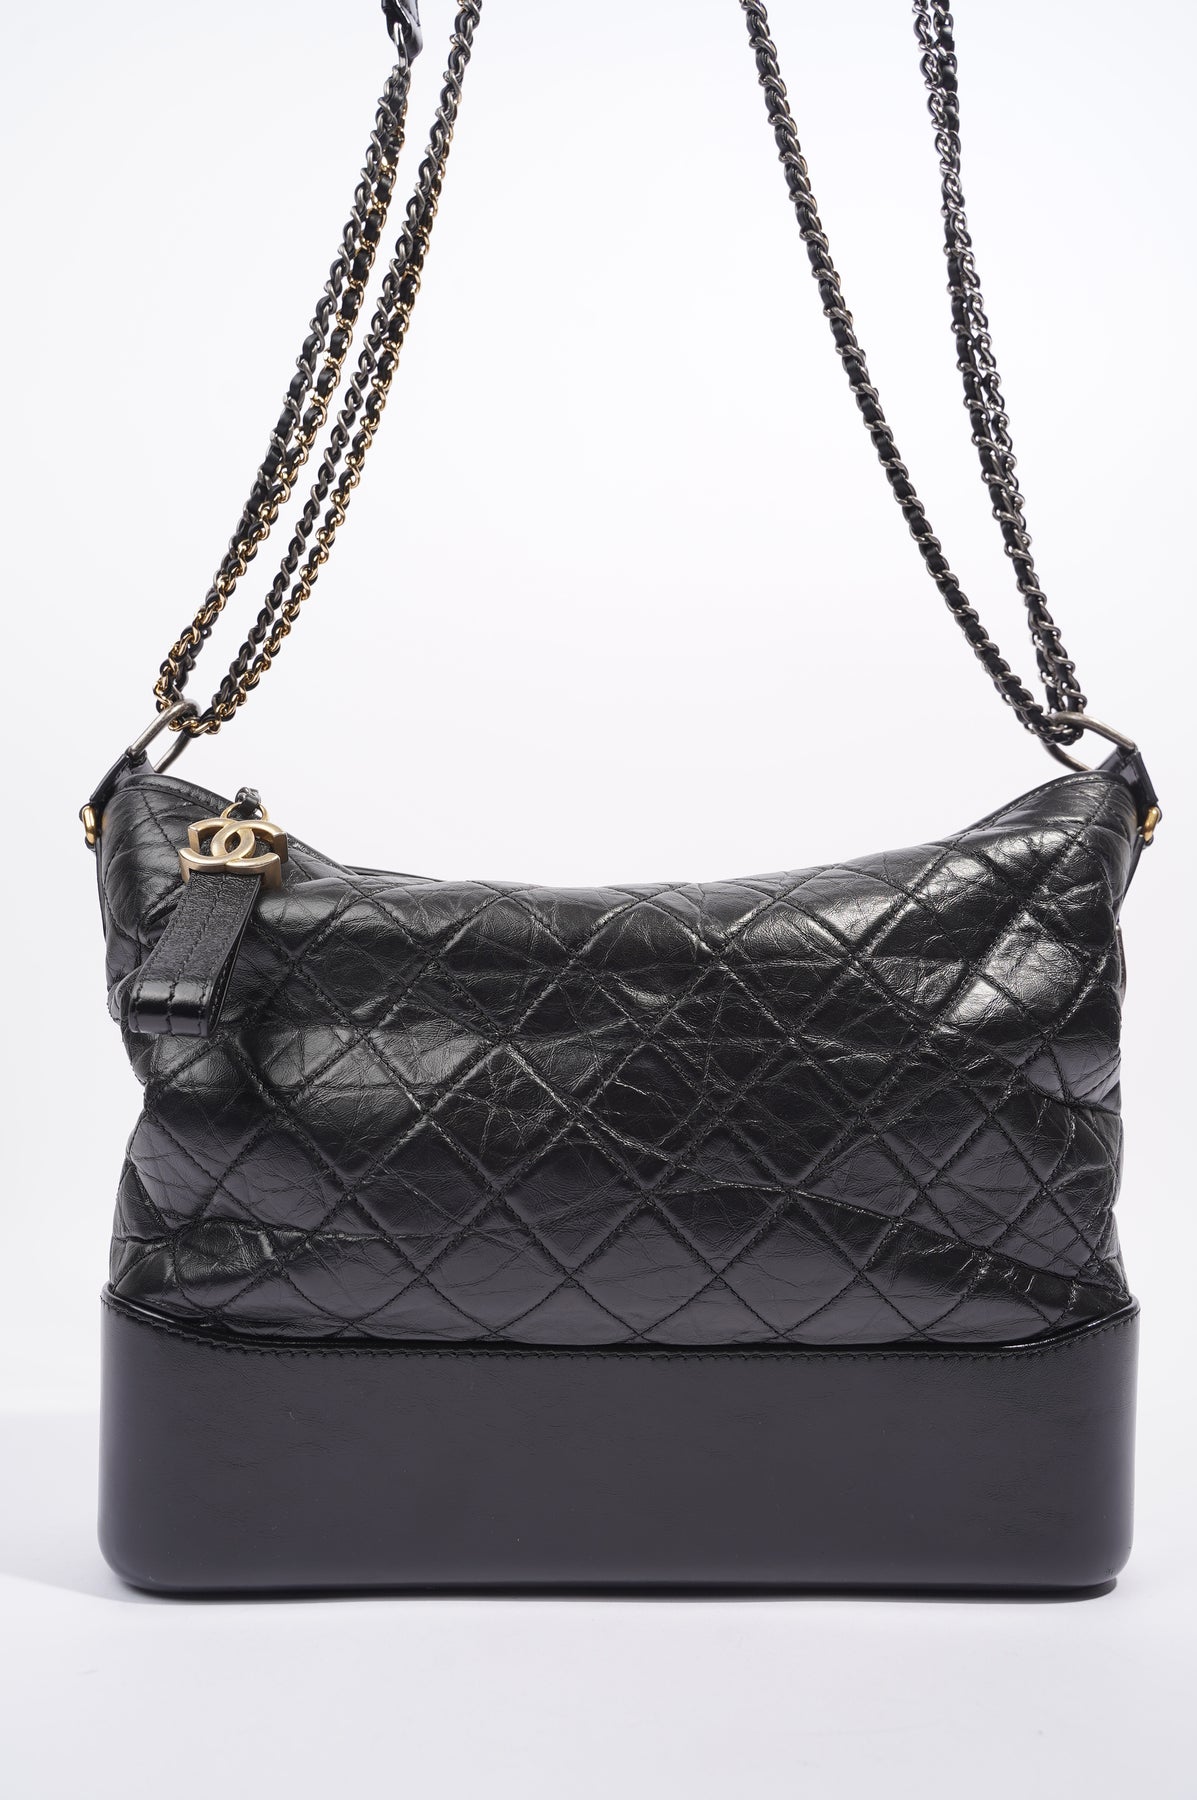 Túi xách Chanel Gabrielle hobo bag siêu cấp màu đen size 28cm  93824  Túi  Xách Nữ Túi Xách Đẹp Túi Xách Giày Dép Nữ  Bước Thời Trang